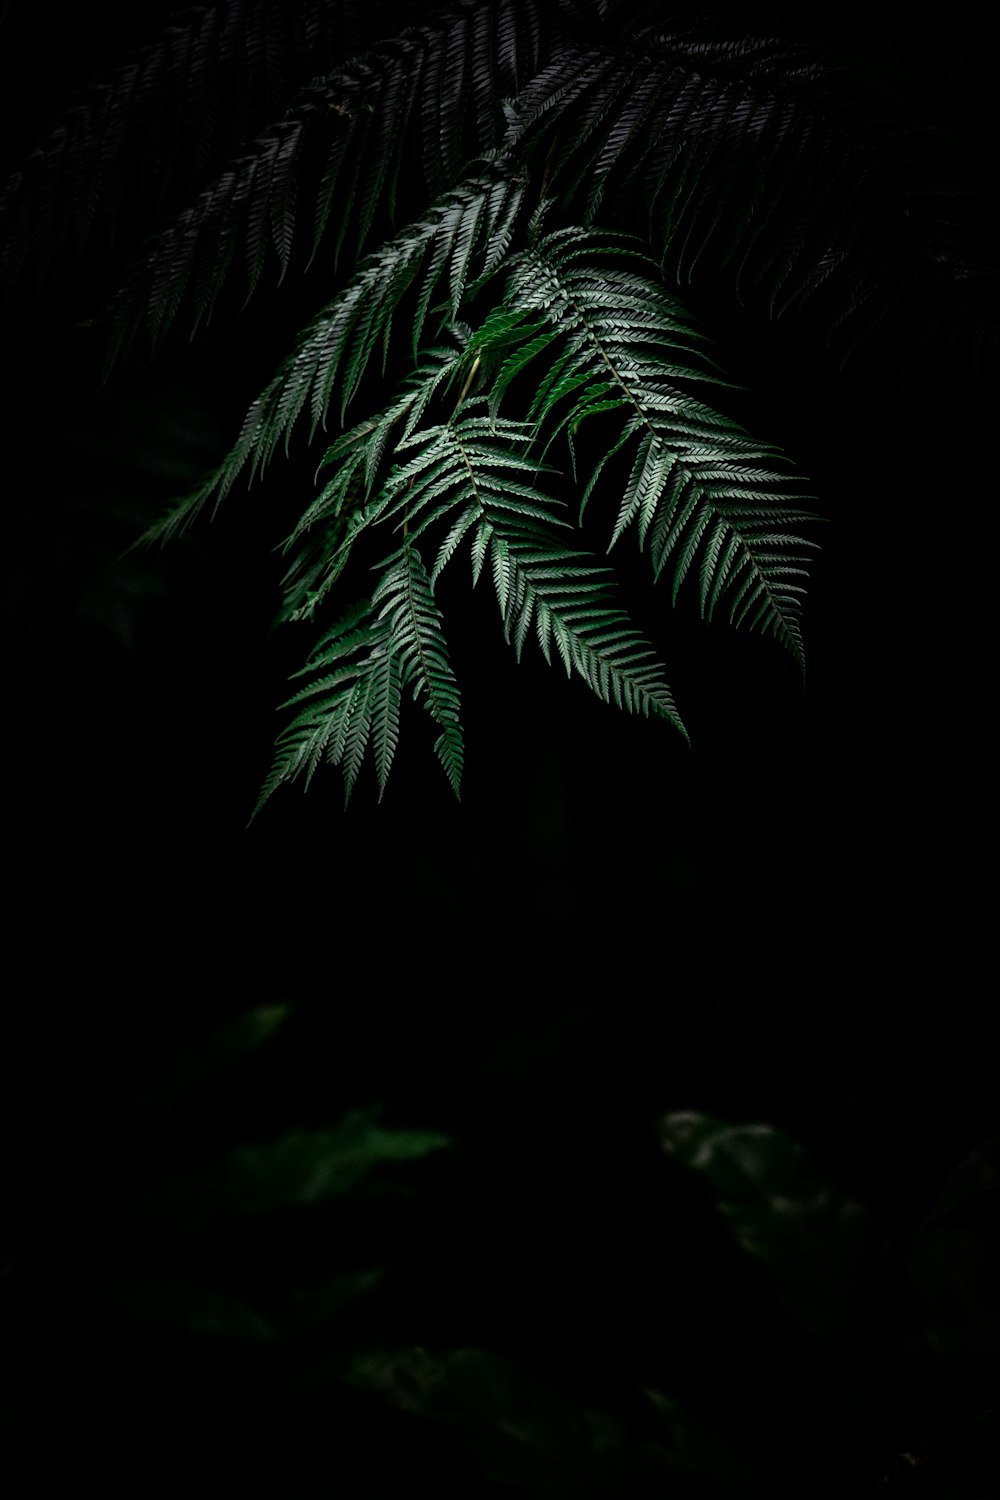 green Boston fern plant